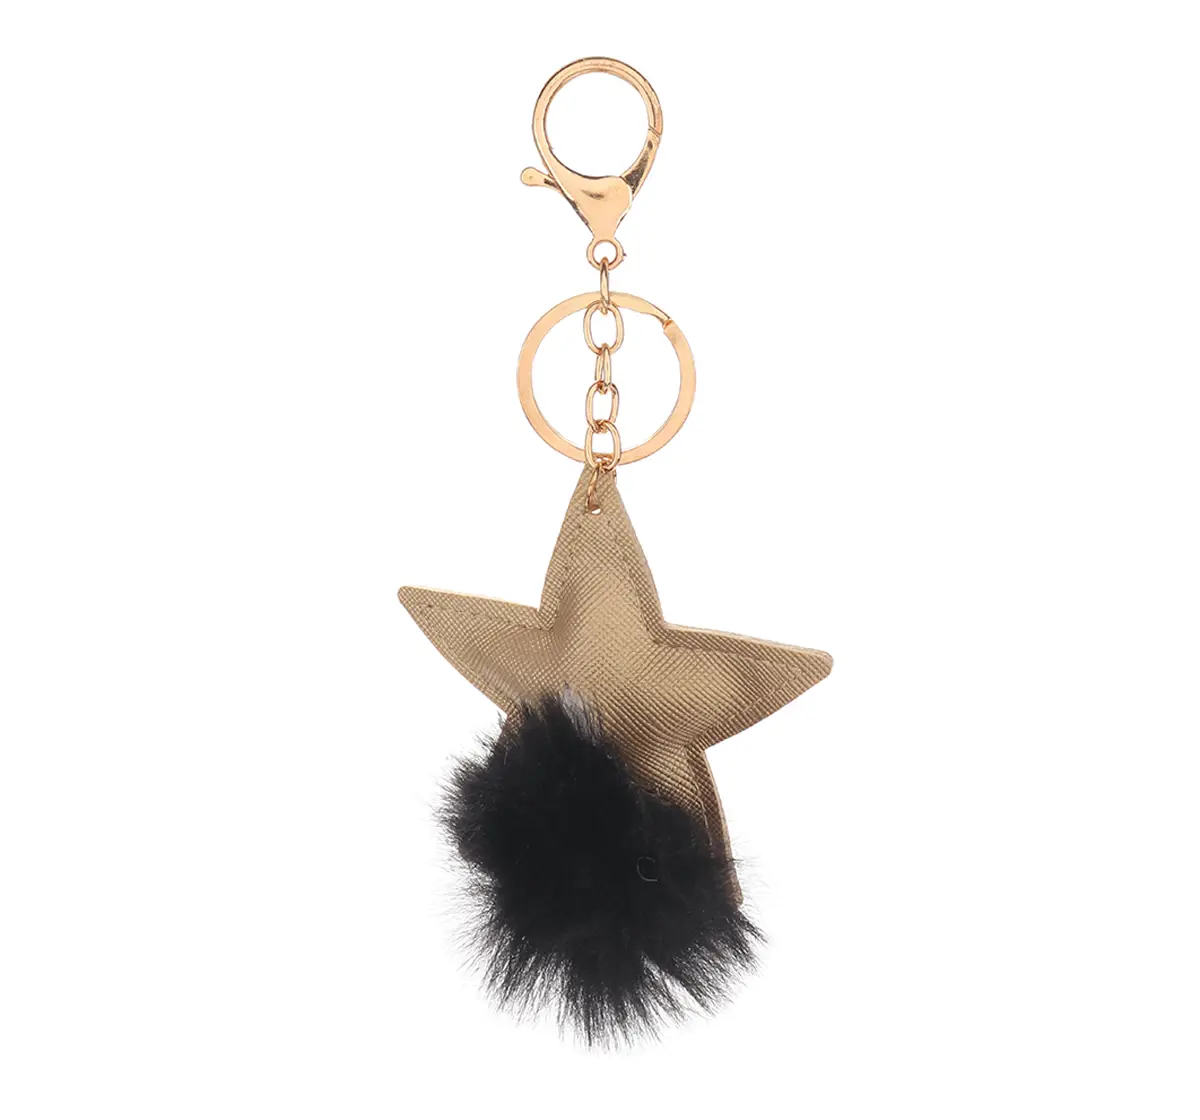 Star Black Keychain by Hamster London for Handbag, Home Key, Car Key, etc, 3Y+